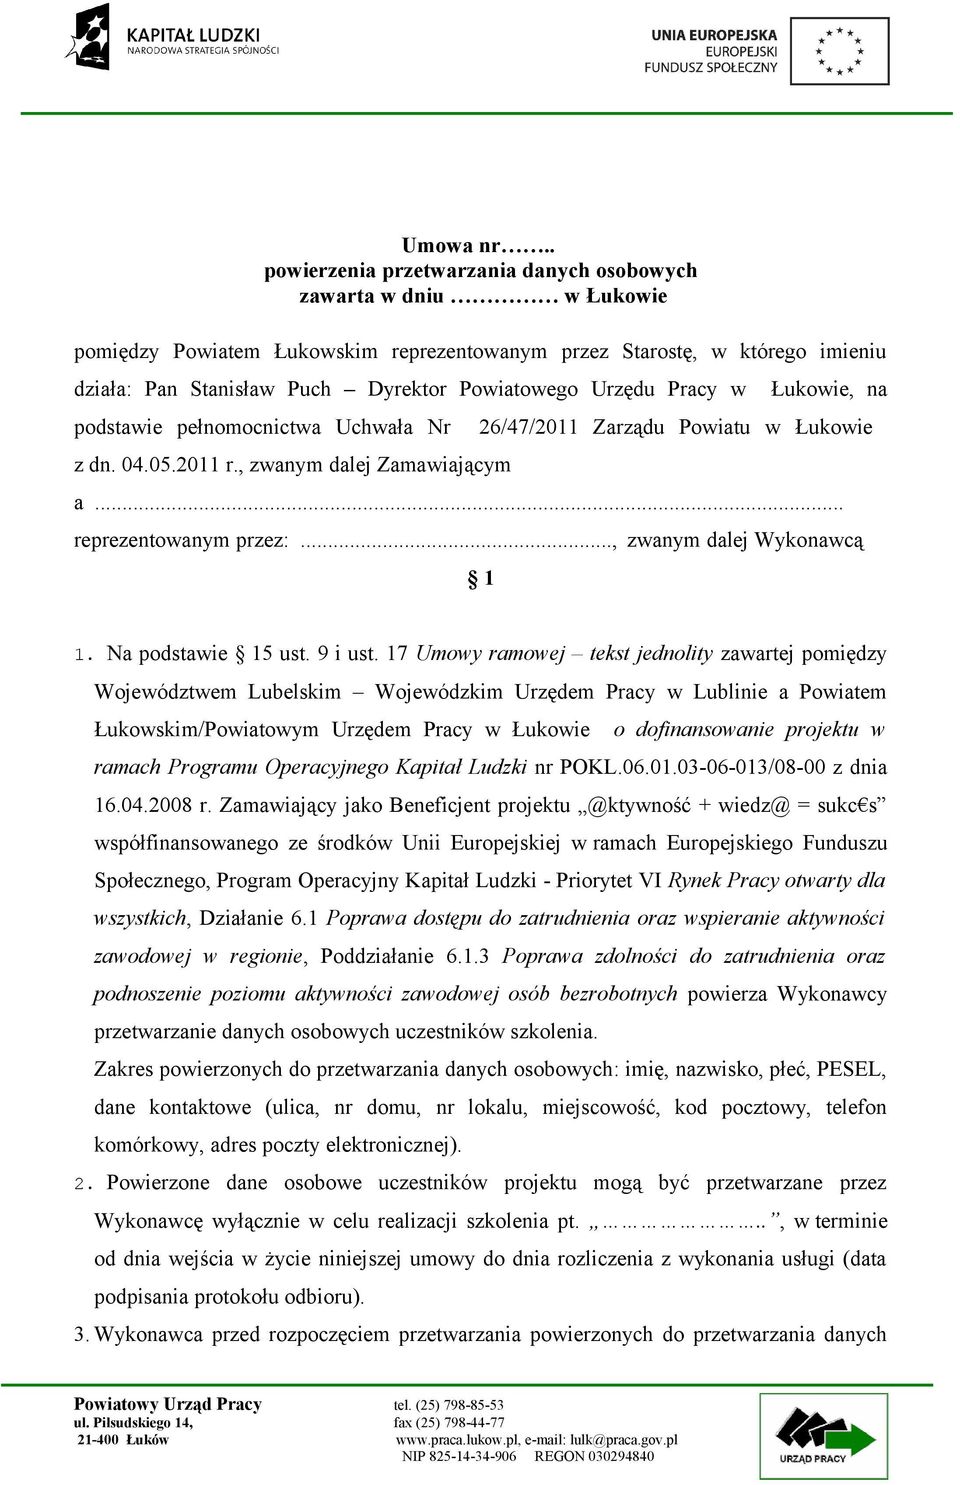 Urzędu Pracy w Łukowie, na podstawie pełnomocnictwa Uchwała Nr z dn. 04.05.2011 r., zwanym dalej Zamawiającym 26/47/2011 Zarządu Powiatu w Łukowie a... reprezentowanym przez:.